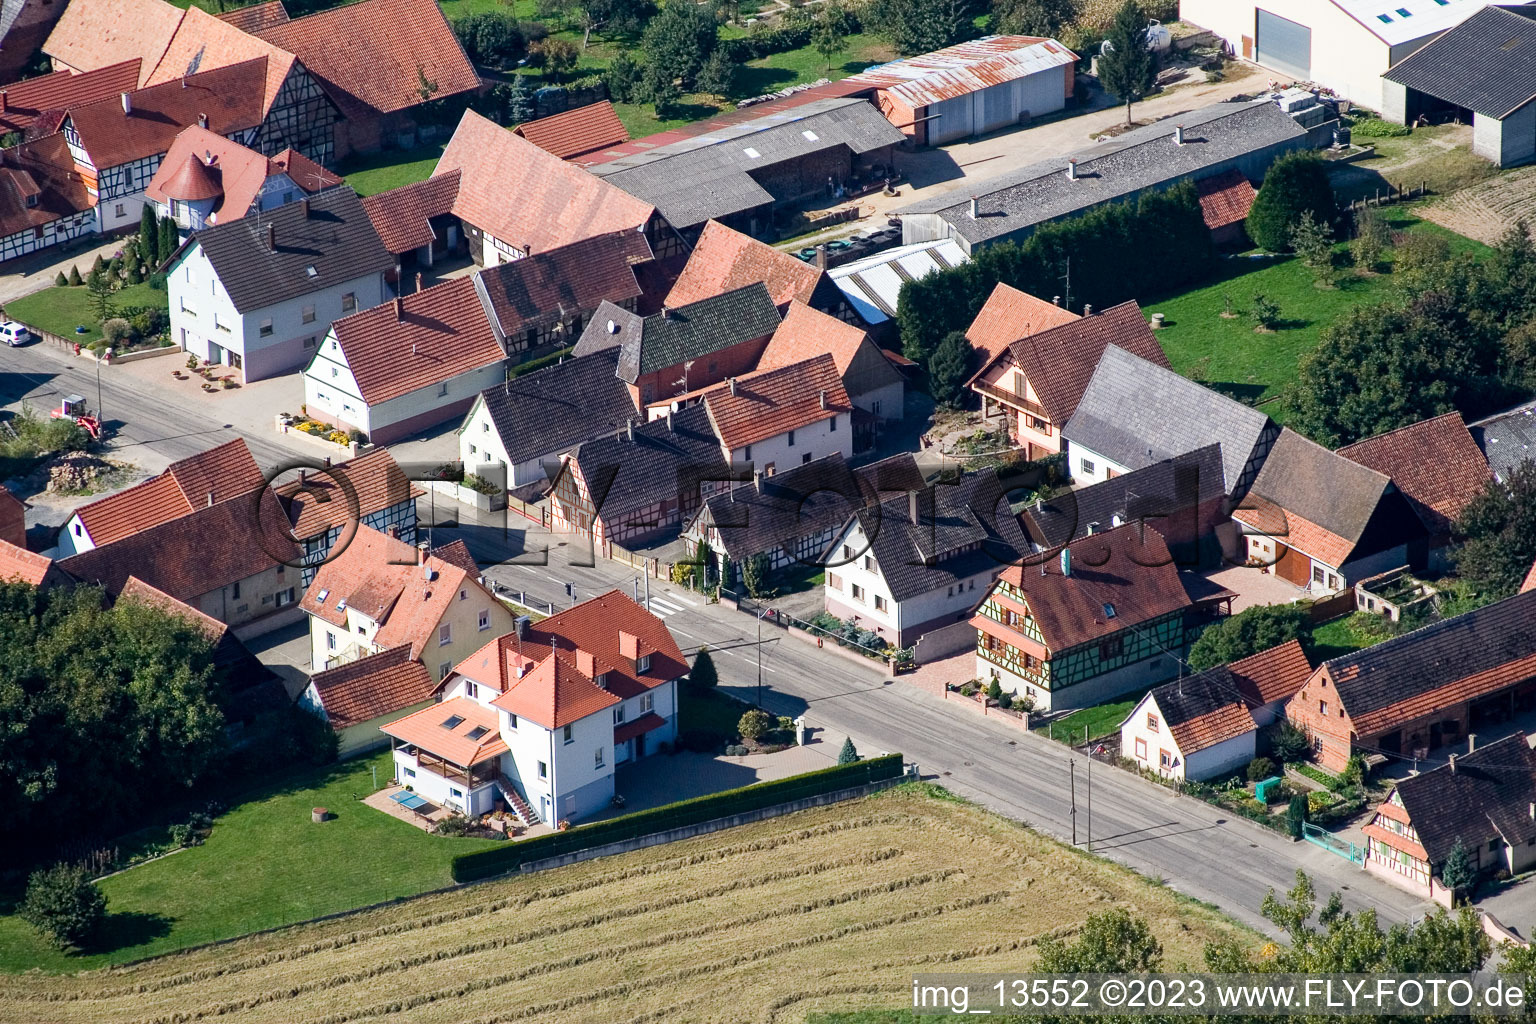 Niederlauterbach dans le département Bas Rhin, France vu d'un drone